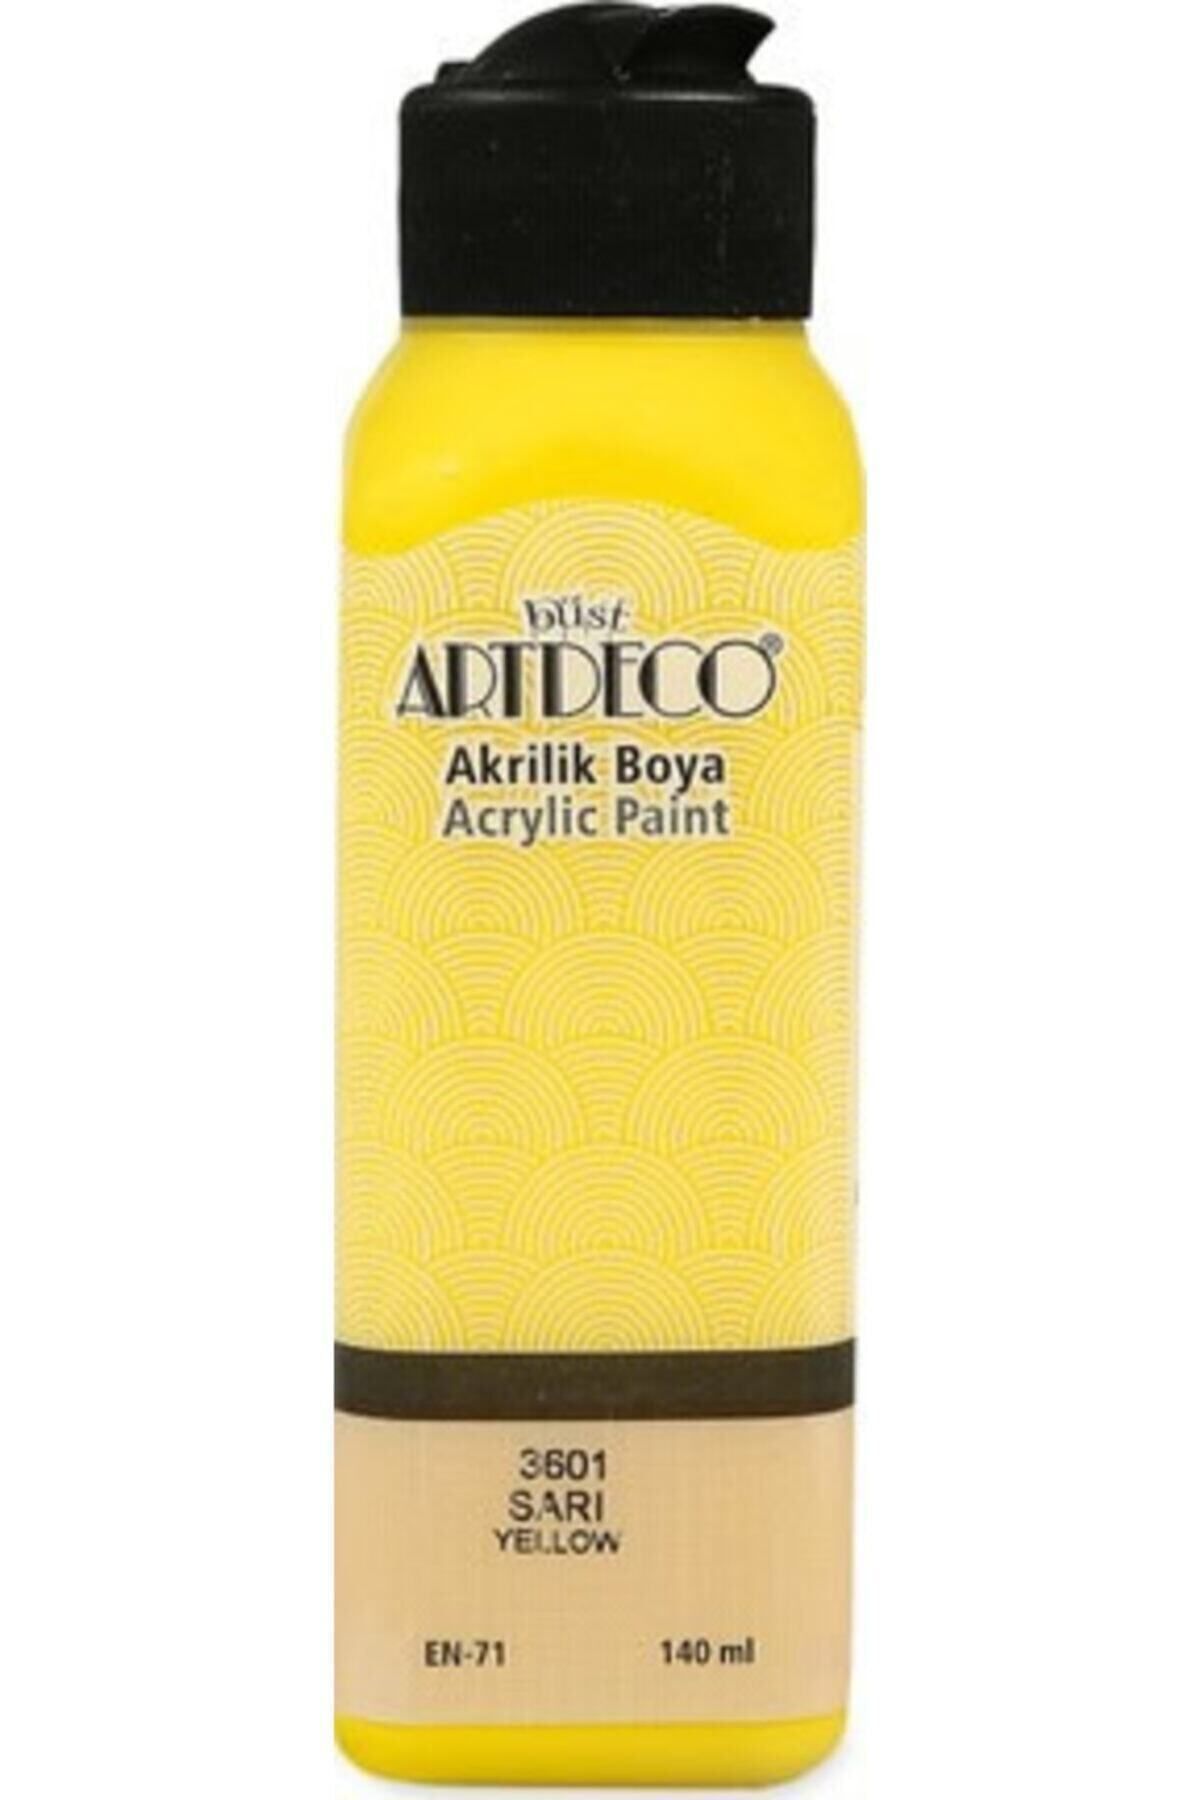 Artdeco Sarı Akrilik Boya 3601 140 ml